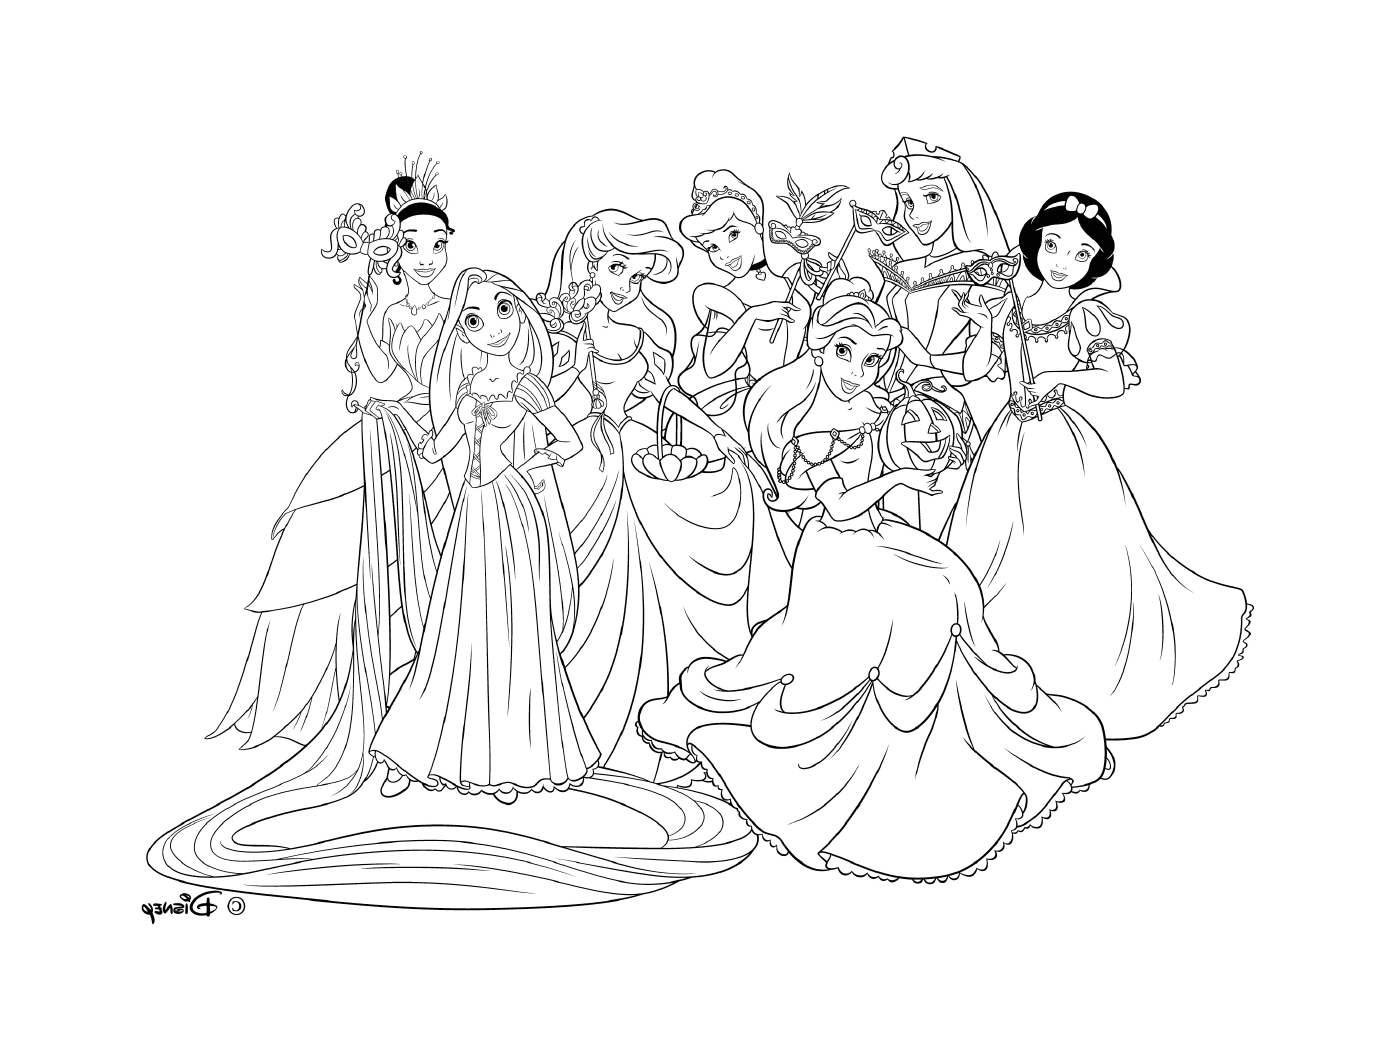  Группа принцесс Дисней позирует на фото 